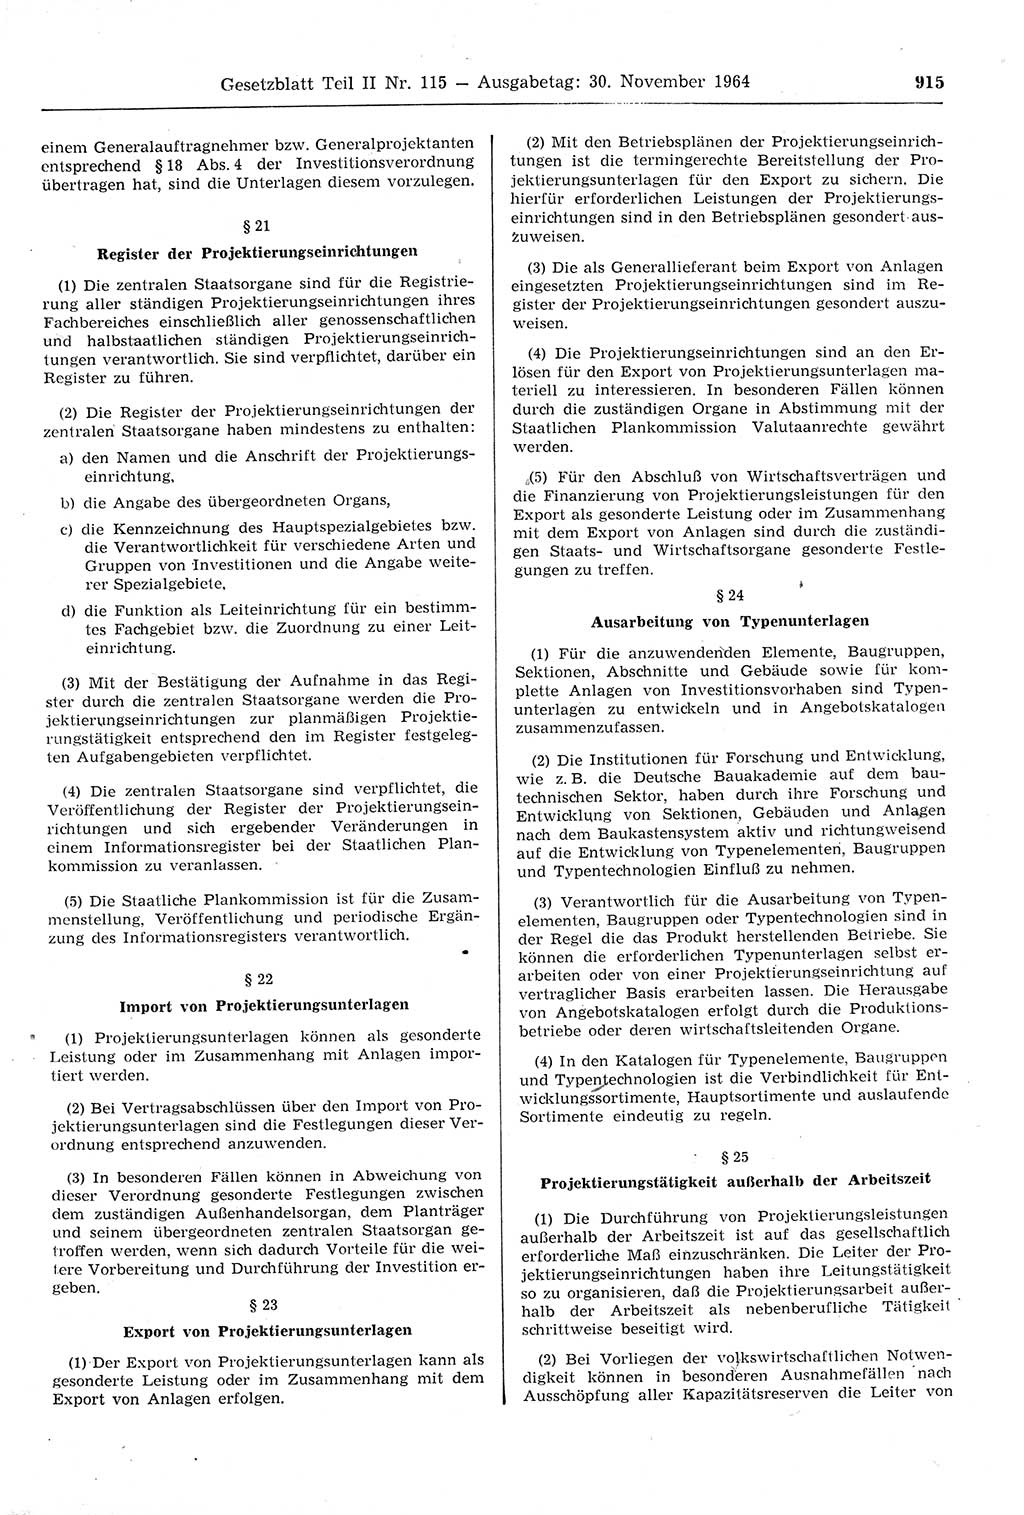 Gesetzblatt (GBl.) der Deutschen Demokratischen Republik (DDR) Teil ⅠⅠ 1964, Seite 915 (GBl. DDR ⅠⅠ 1964, S. 915)